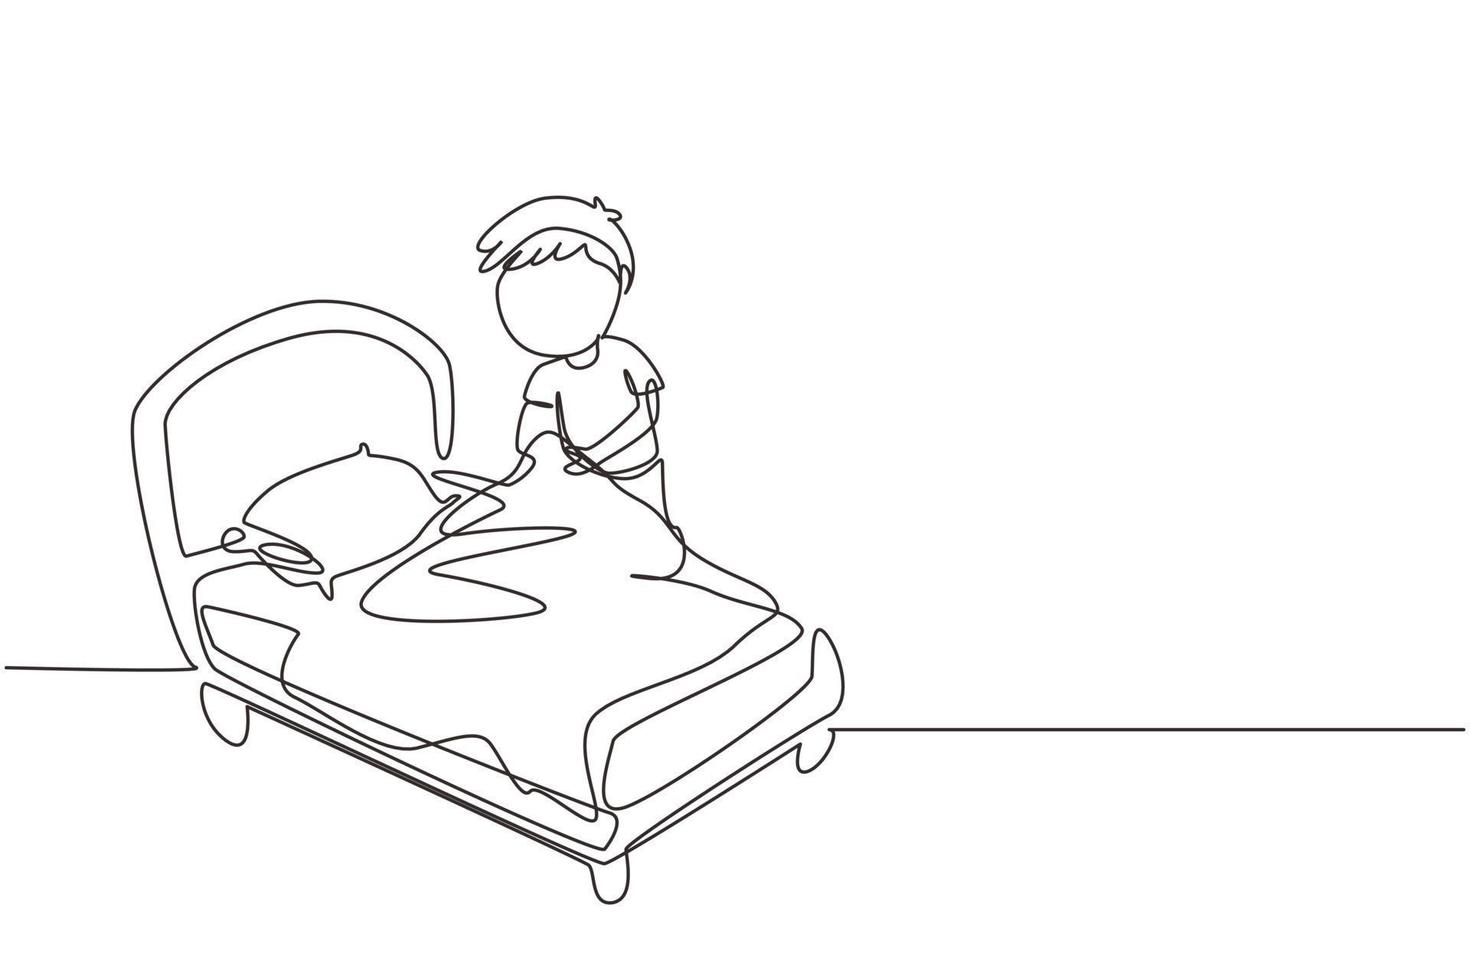 une seule ligne continue dessinant un petit garçon faisant le lit. enfants faisant des tâches ménagères à la maison concept. routine des enfants après le réveil pour ranger le lit. une ligne dessiner illustration vectorielle de conception graphique vecteur